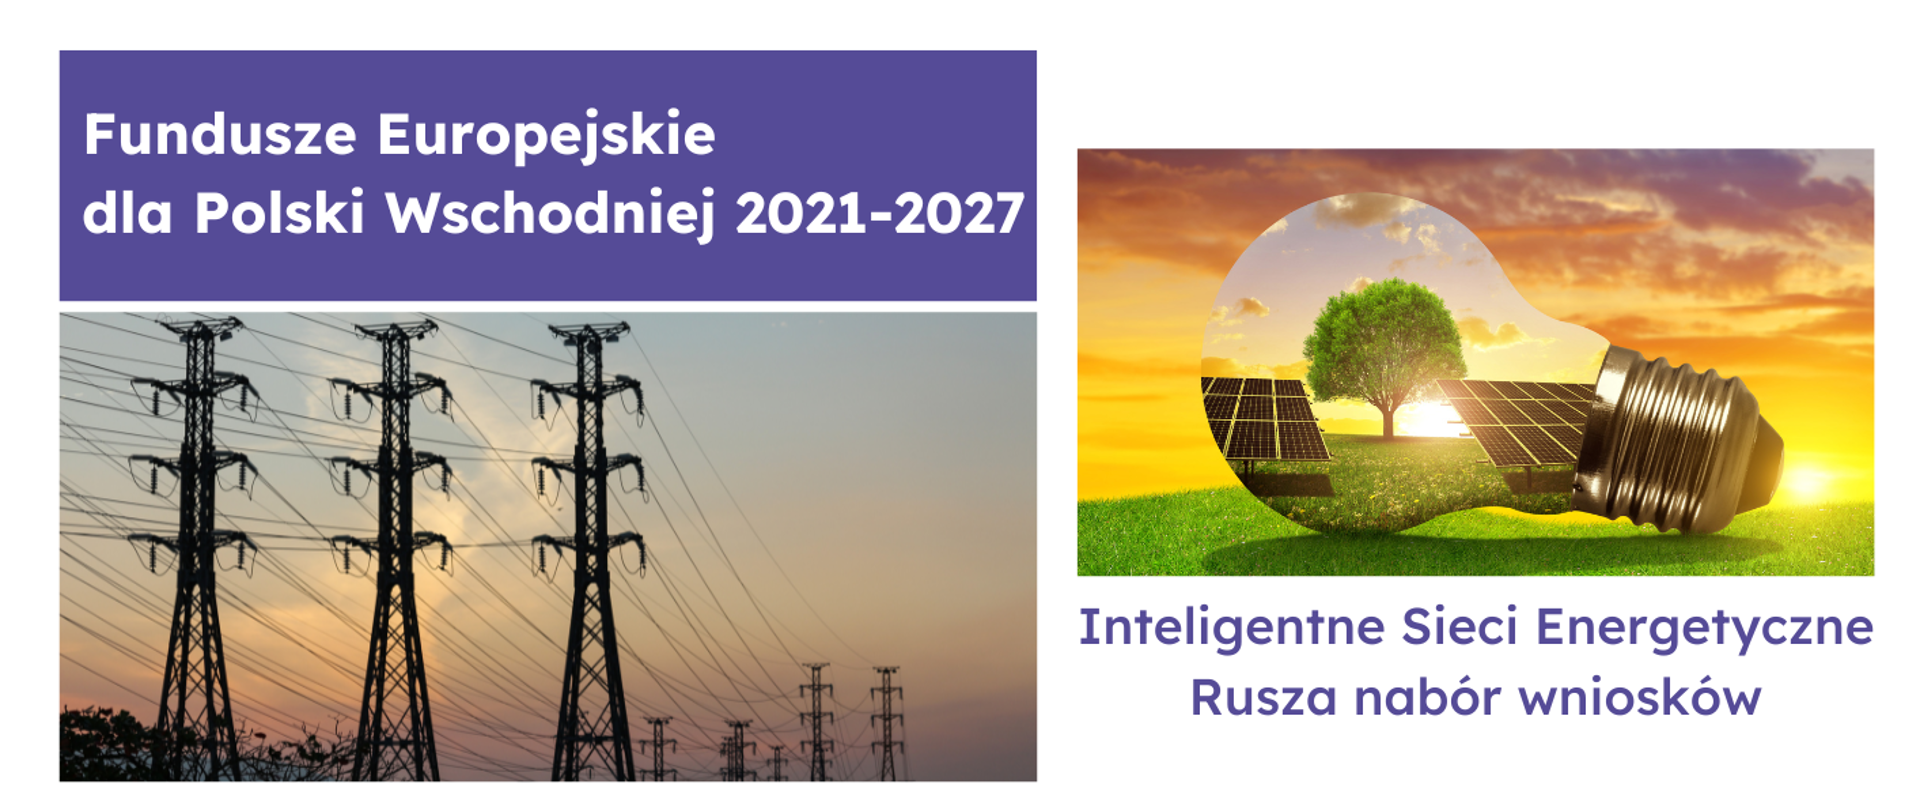 Na grafice napis - "Fundusze Europejskie dla Polski Wschodniej 2021-2027. Inteligentne Sieci Energetyczne Rusza nabór wniosków" oraz zdjęcia stockowe związane z energrtyką